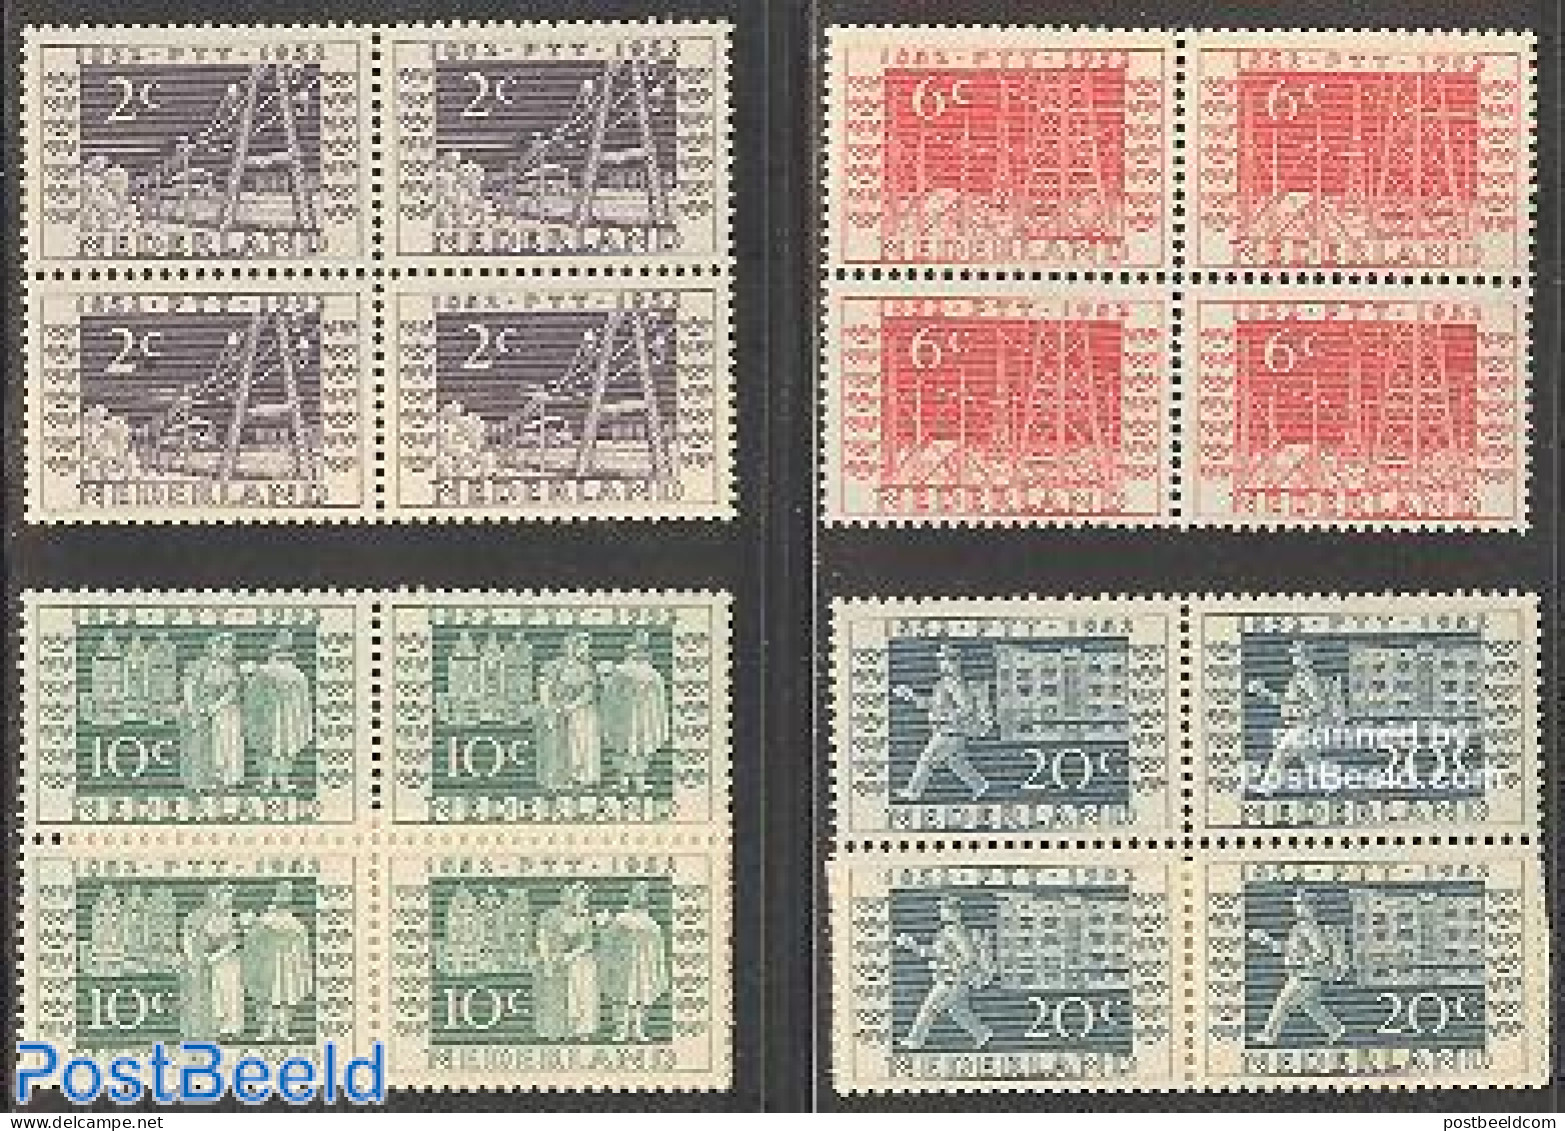 Netherlands 1952 PTT JUBILEE 4V BL.OF 4, Mint NH, Transport - Post - Railways - Unused Stamps